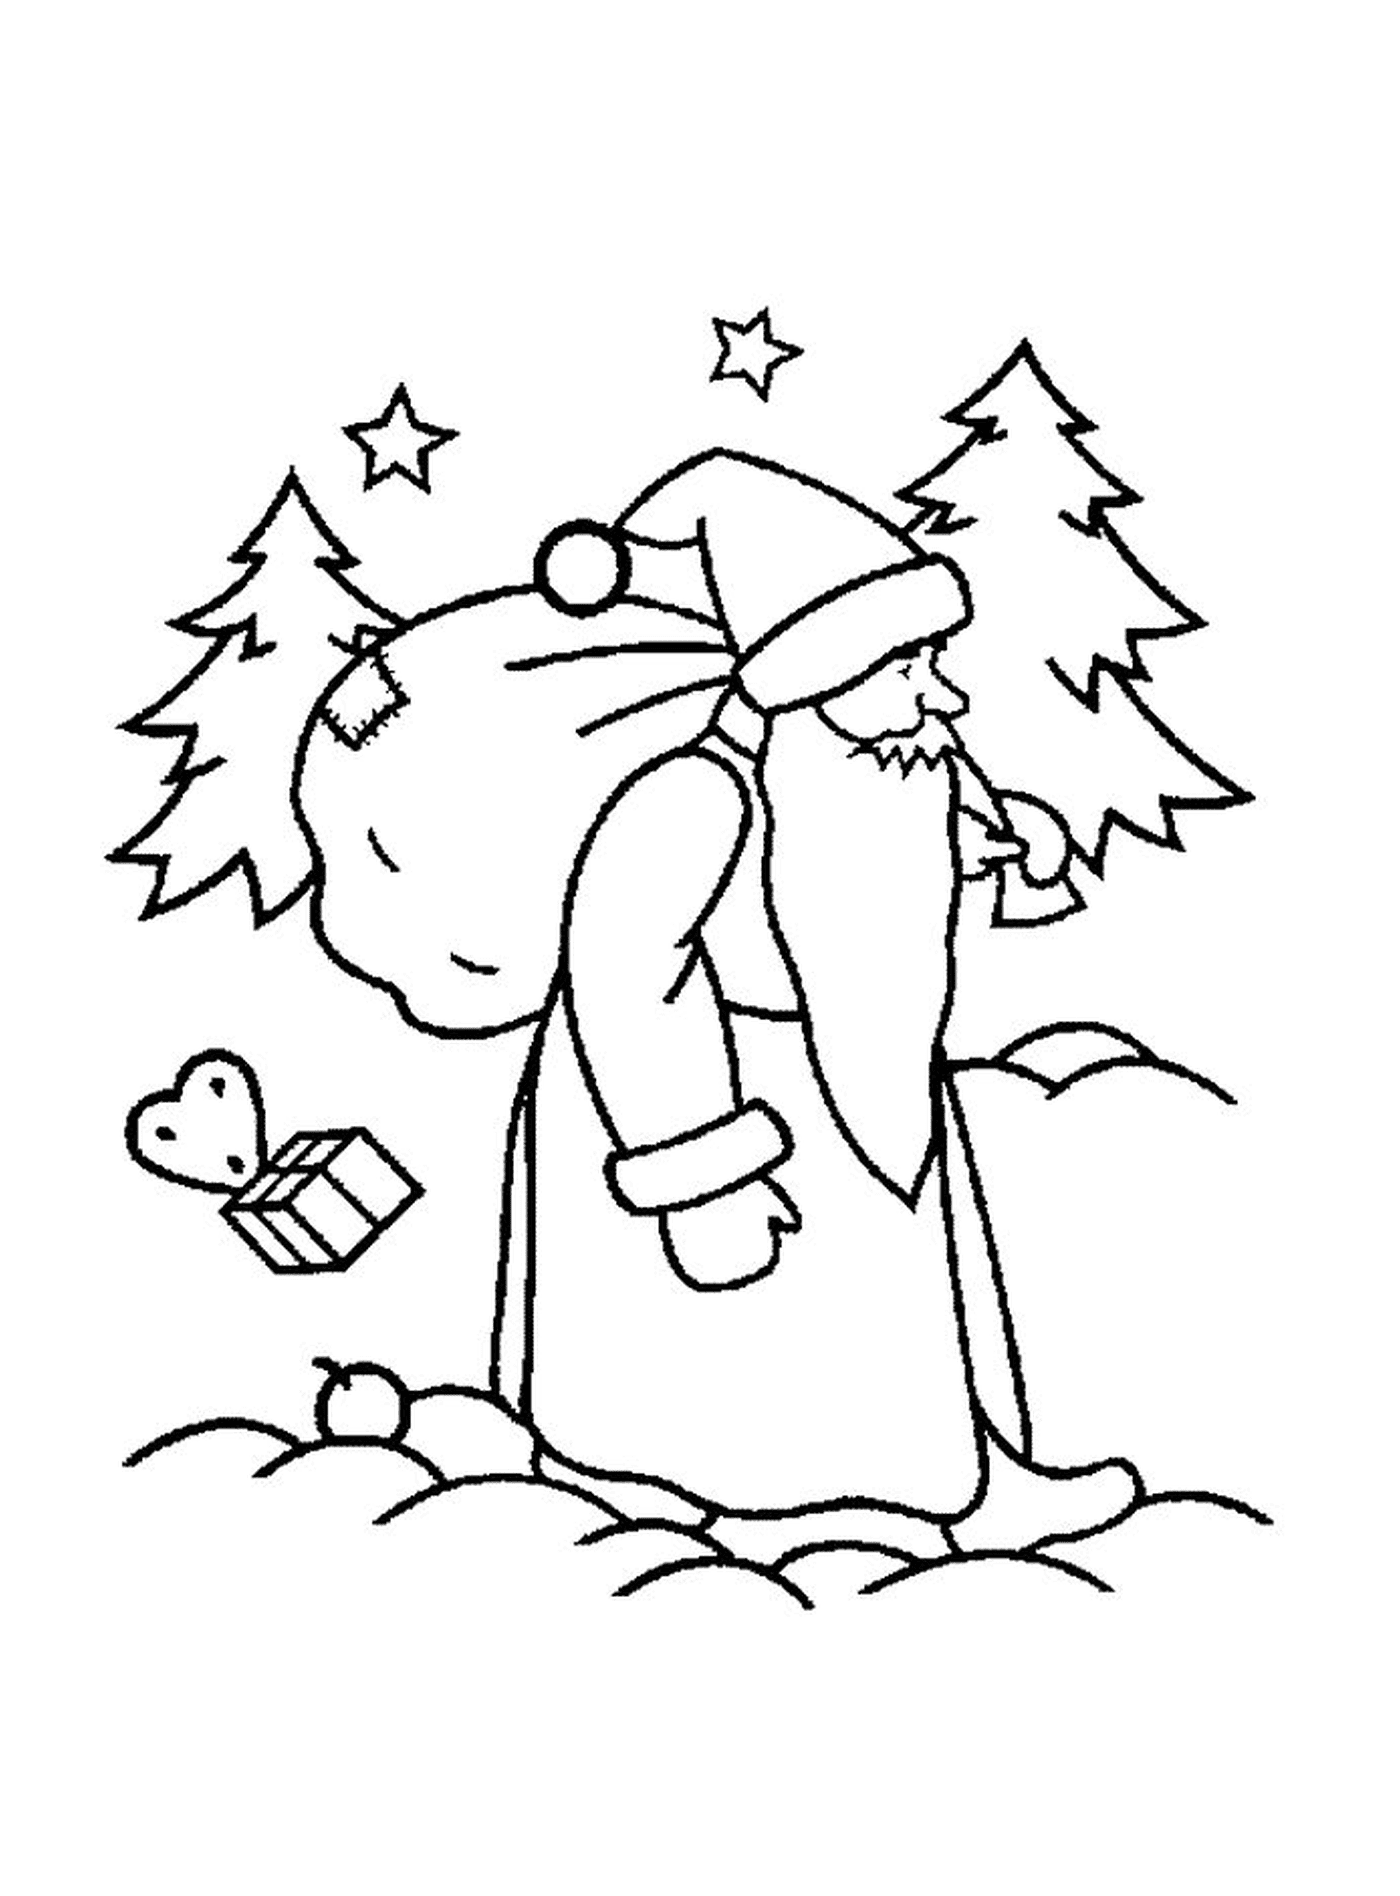  Santa zu Fuß zu einem Baum 